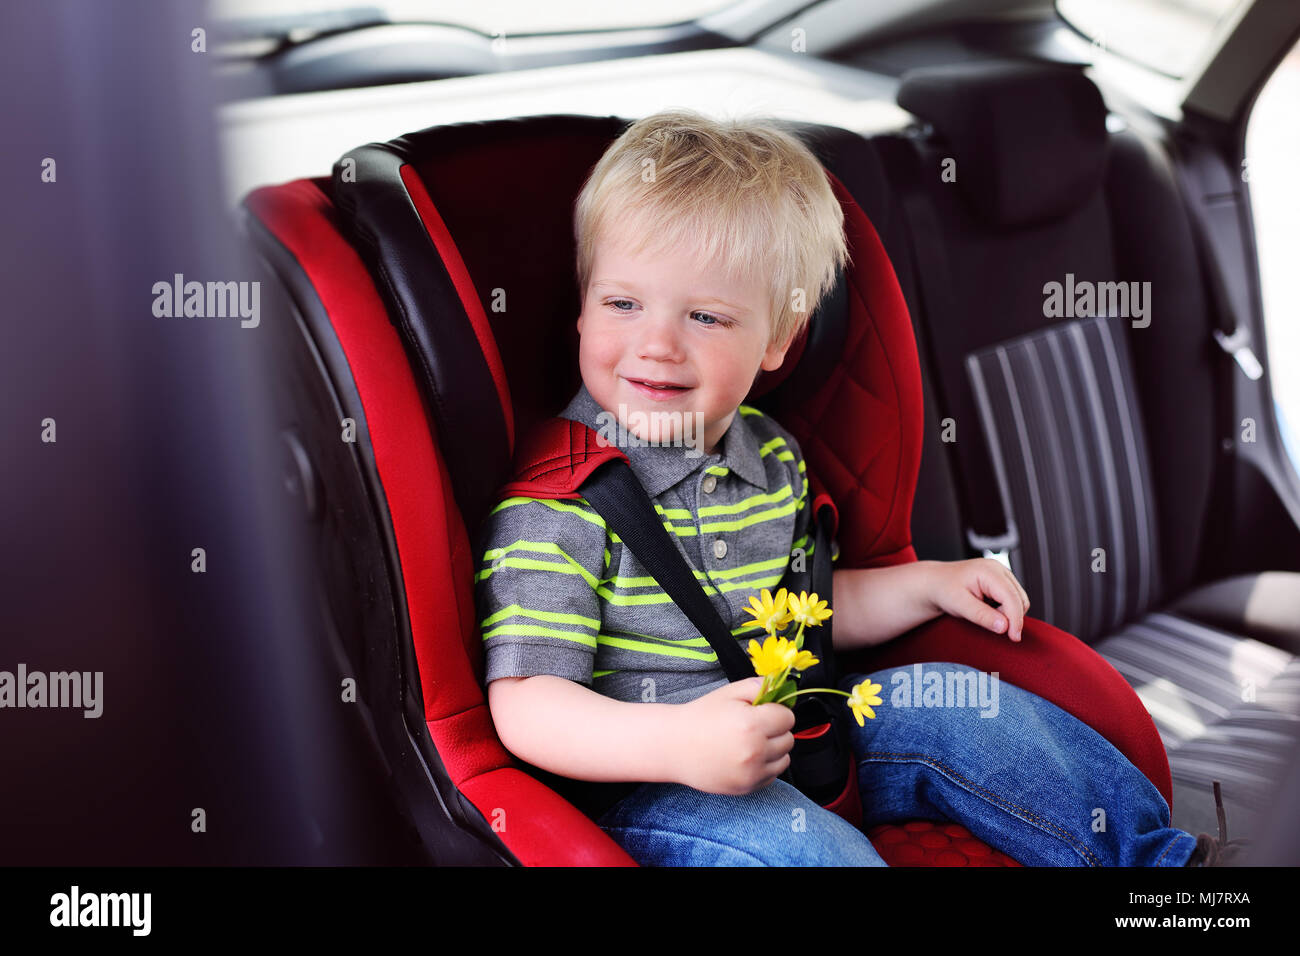 Porträt eines jungen Kindes von einem Jungen mit blonden Haaren in einem kinder Autositz. Stockfoto